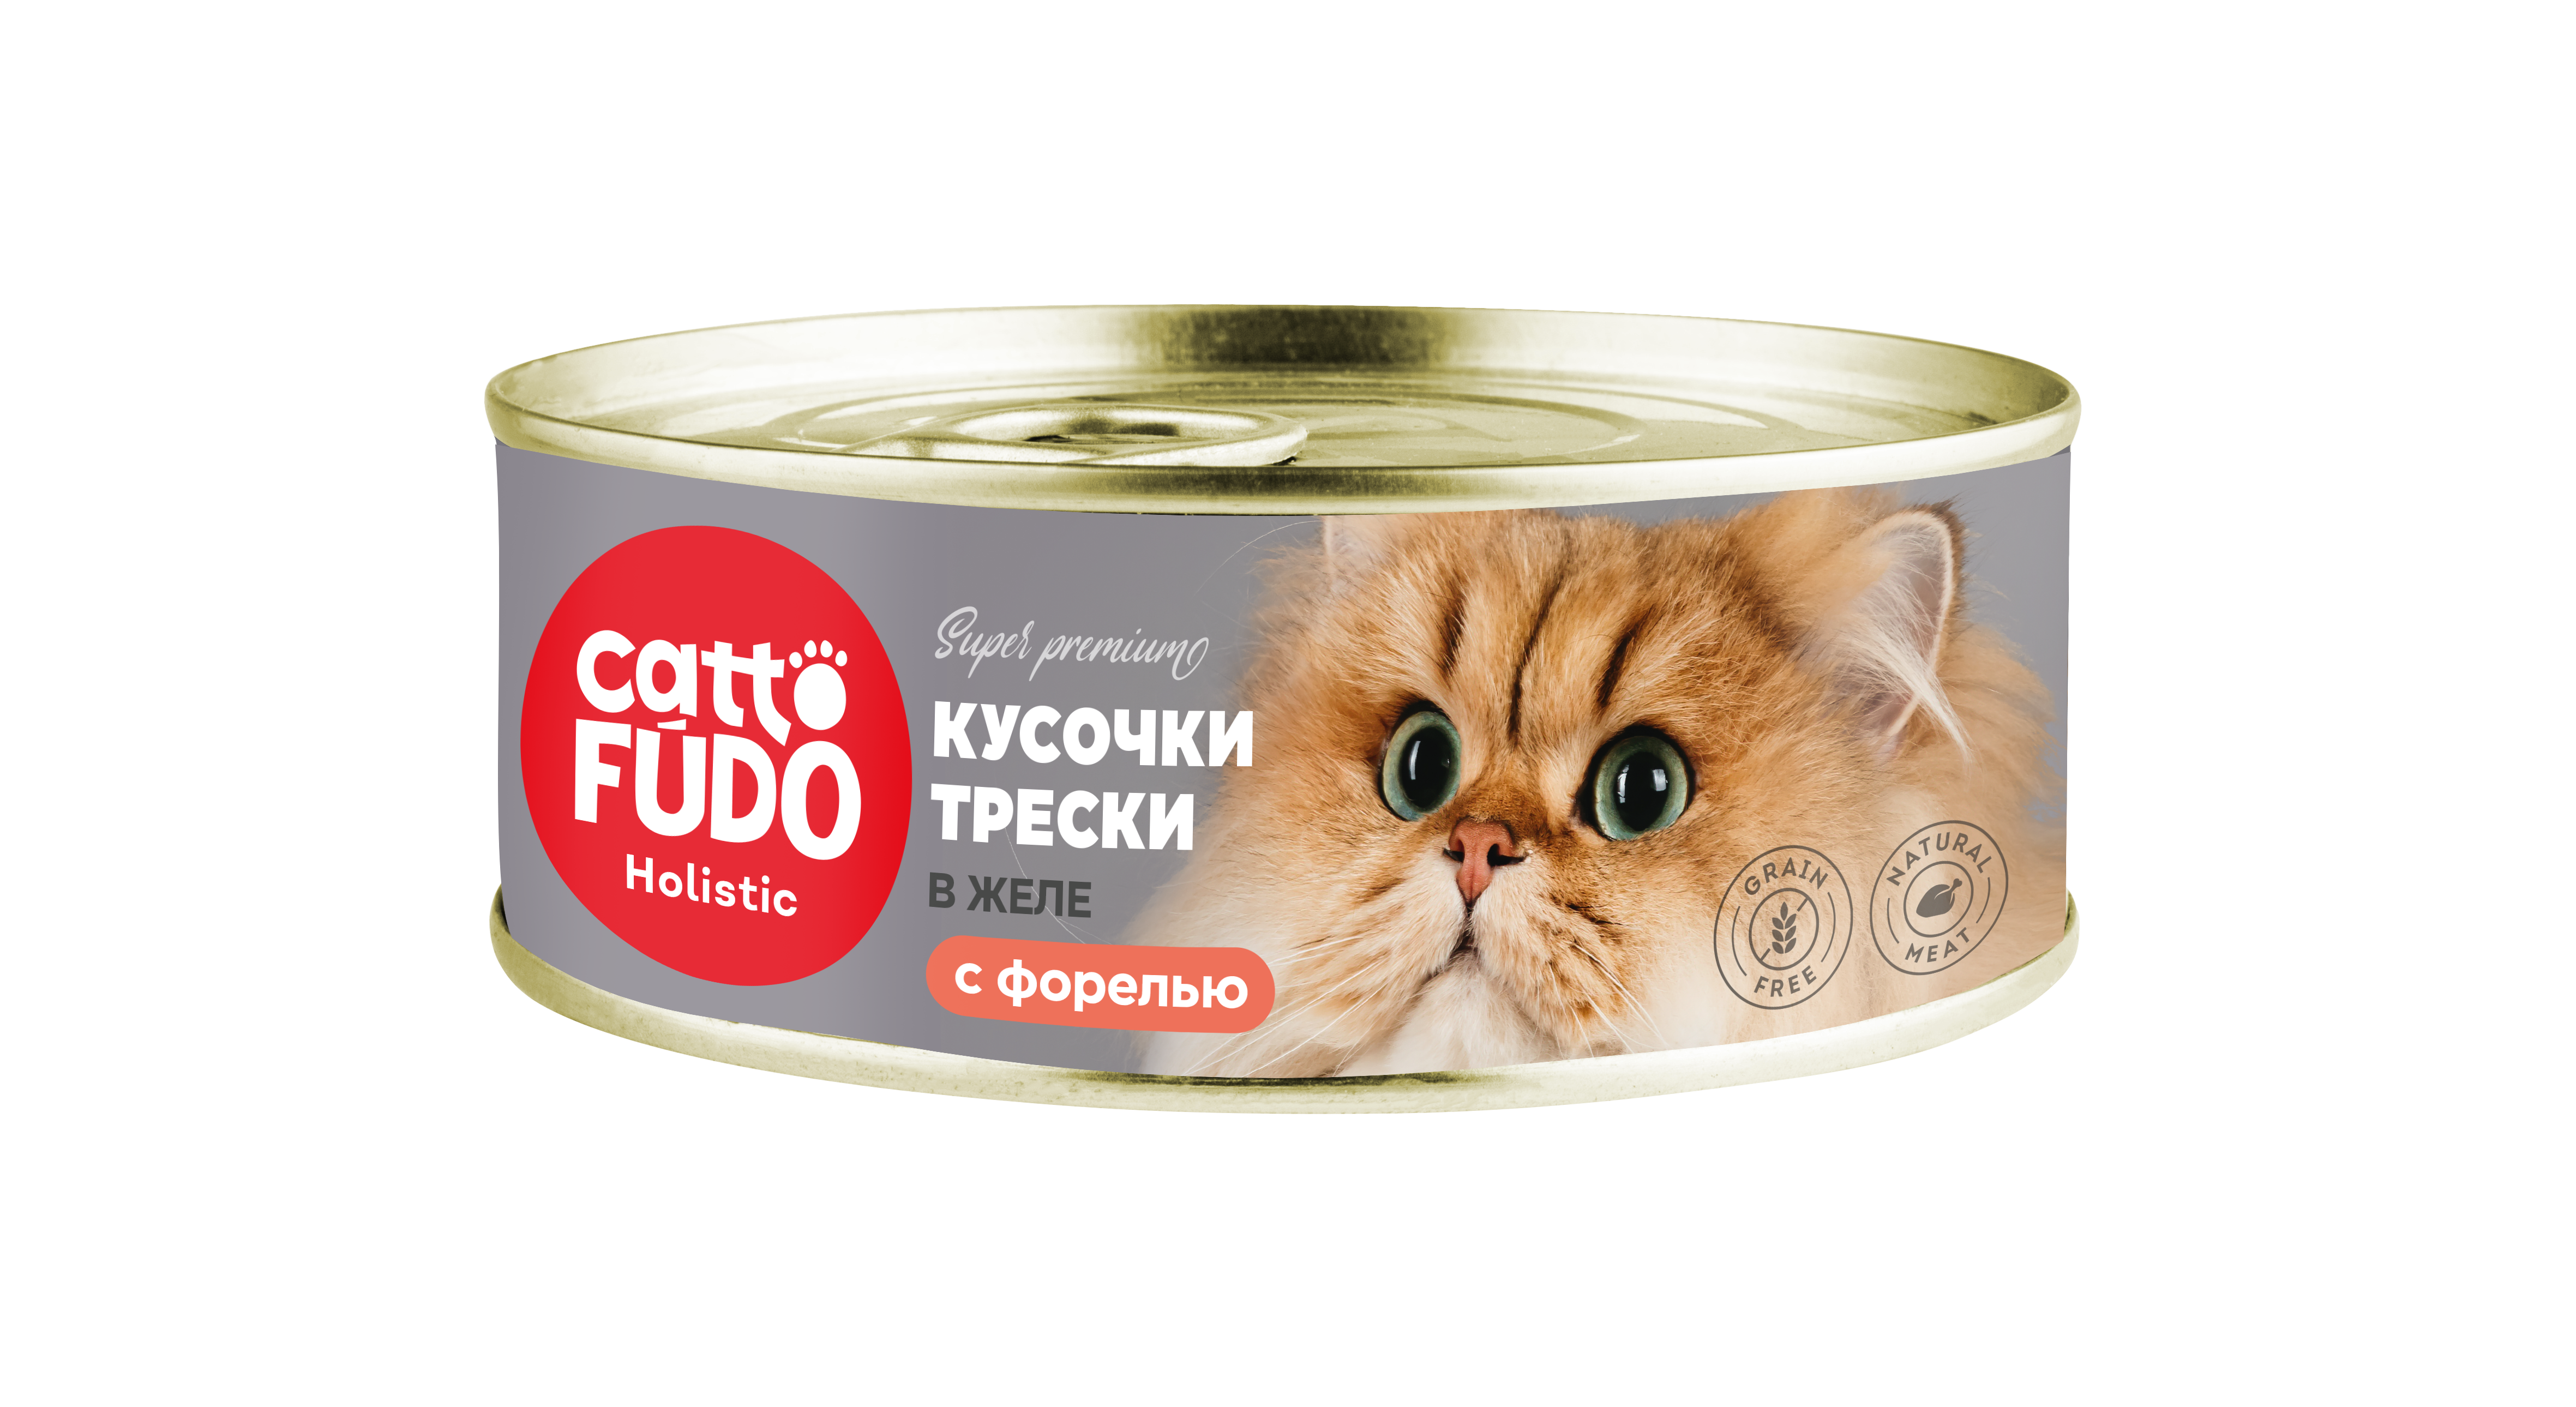 Cattofūdo Holistic консервы для кошек кусочки трескис форелью в желе 80г фото, цены, купить